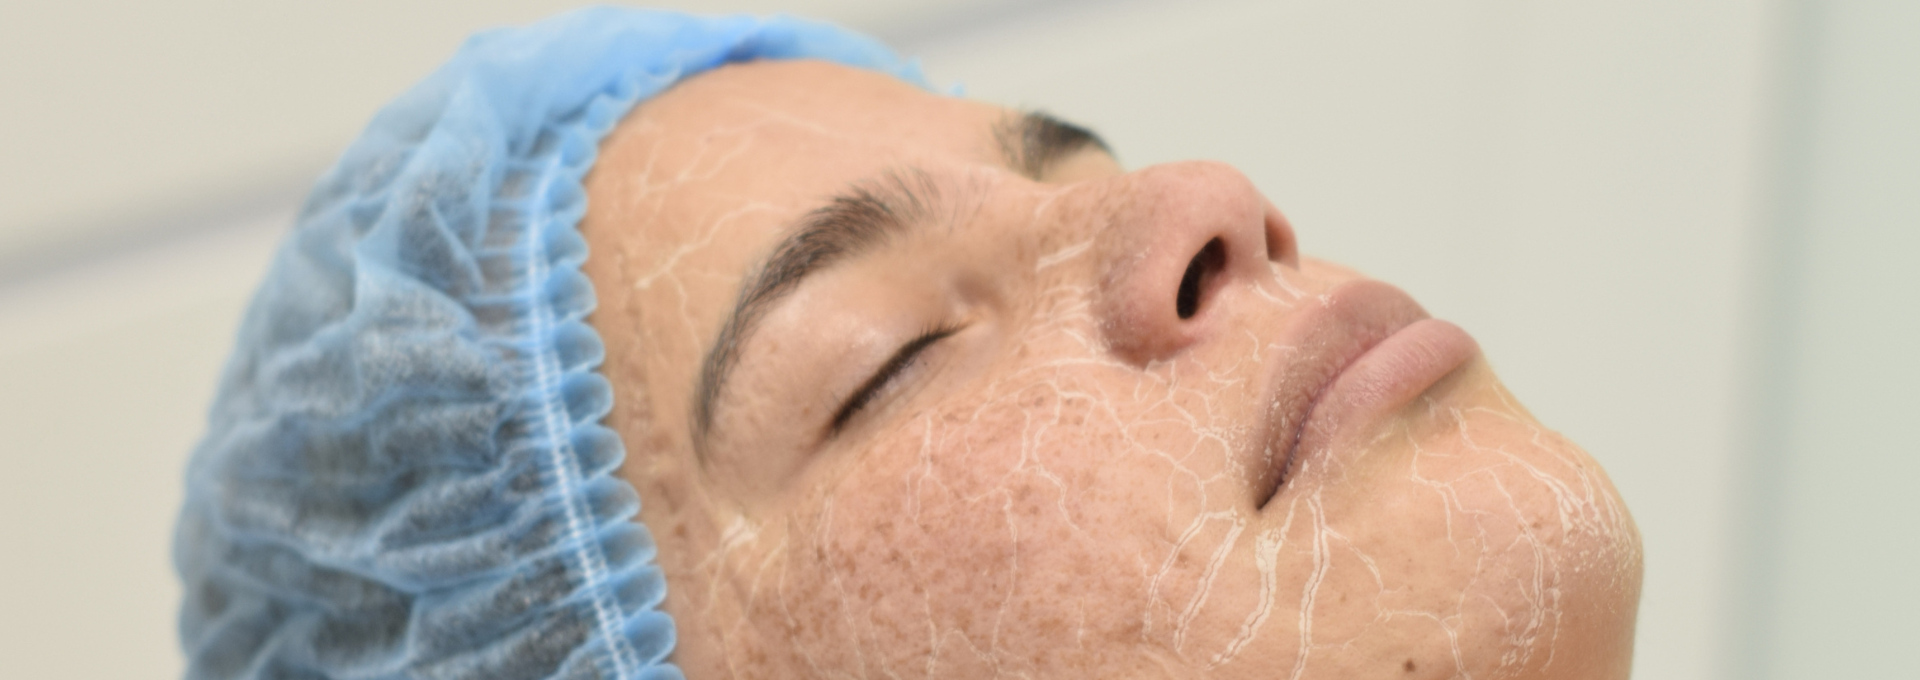 hidratación facial para la piel